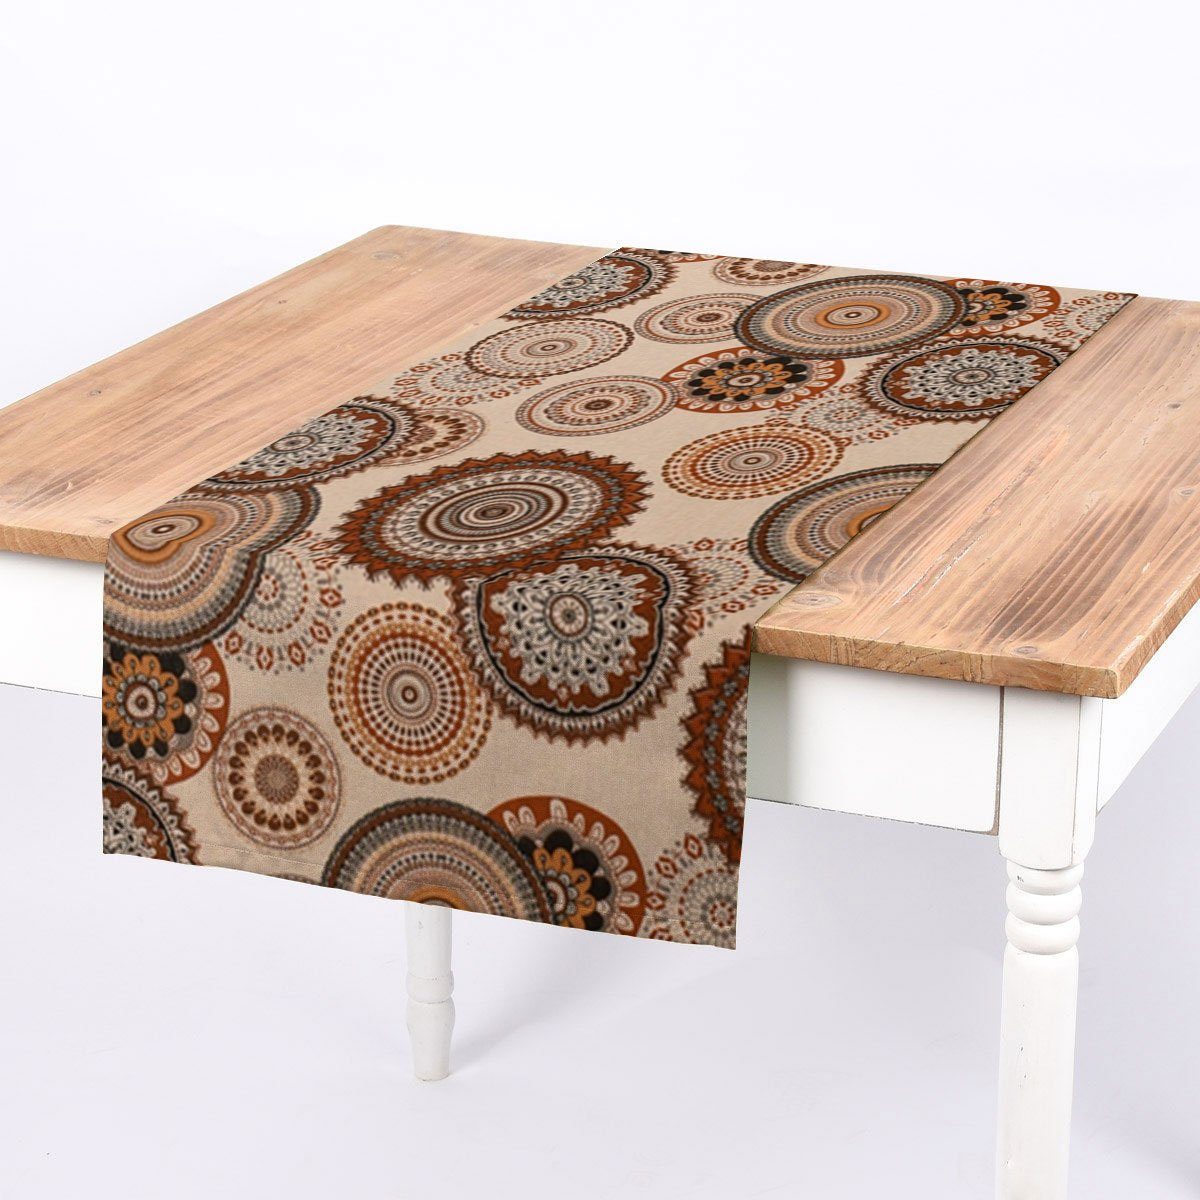 SCHÖNER LEBEN. Tischläufer SCHÖNER LEBEN. Tischläufer Leinenlook Geometric Mandala natur braun, handmade